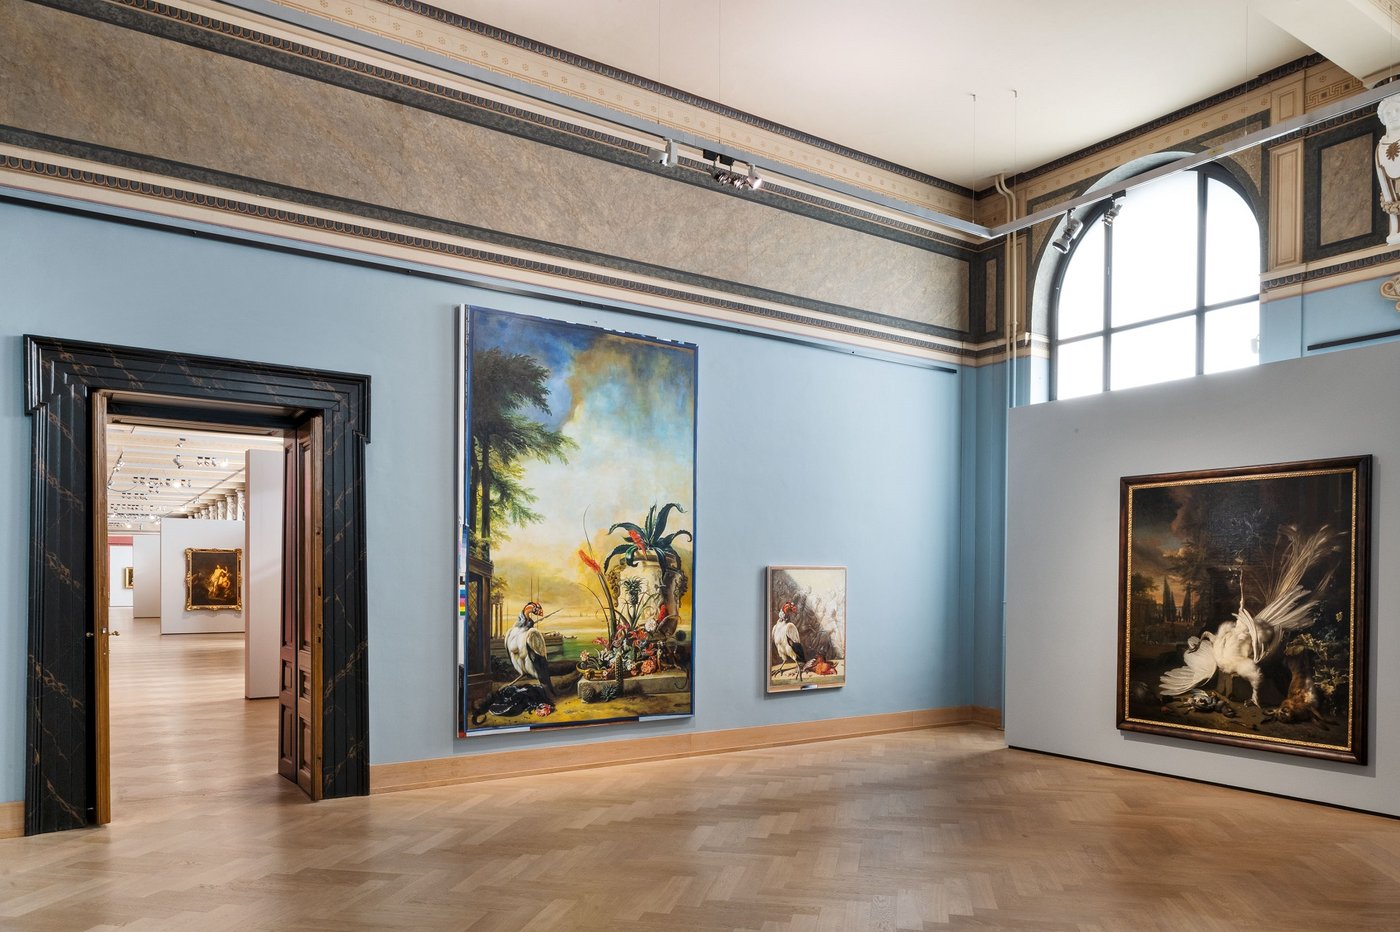 Ein blau ausgemalter historischer Ausstellungsraum mit drei bunten Gemälden und ein Blick durch eine Tür offenbar eine Einsicht in weitere weitläufige Ausstellungsräume.